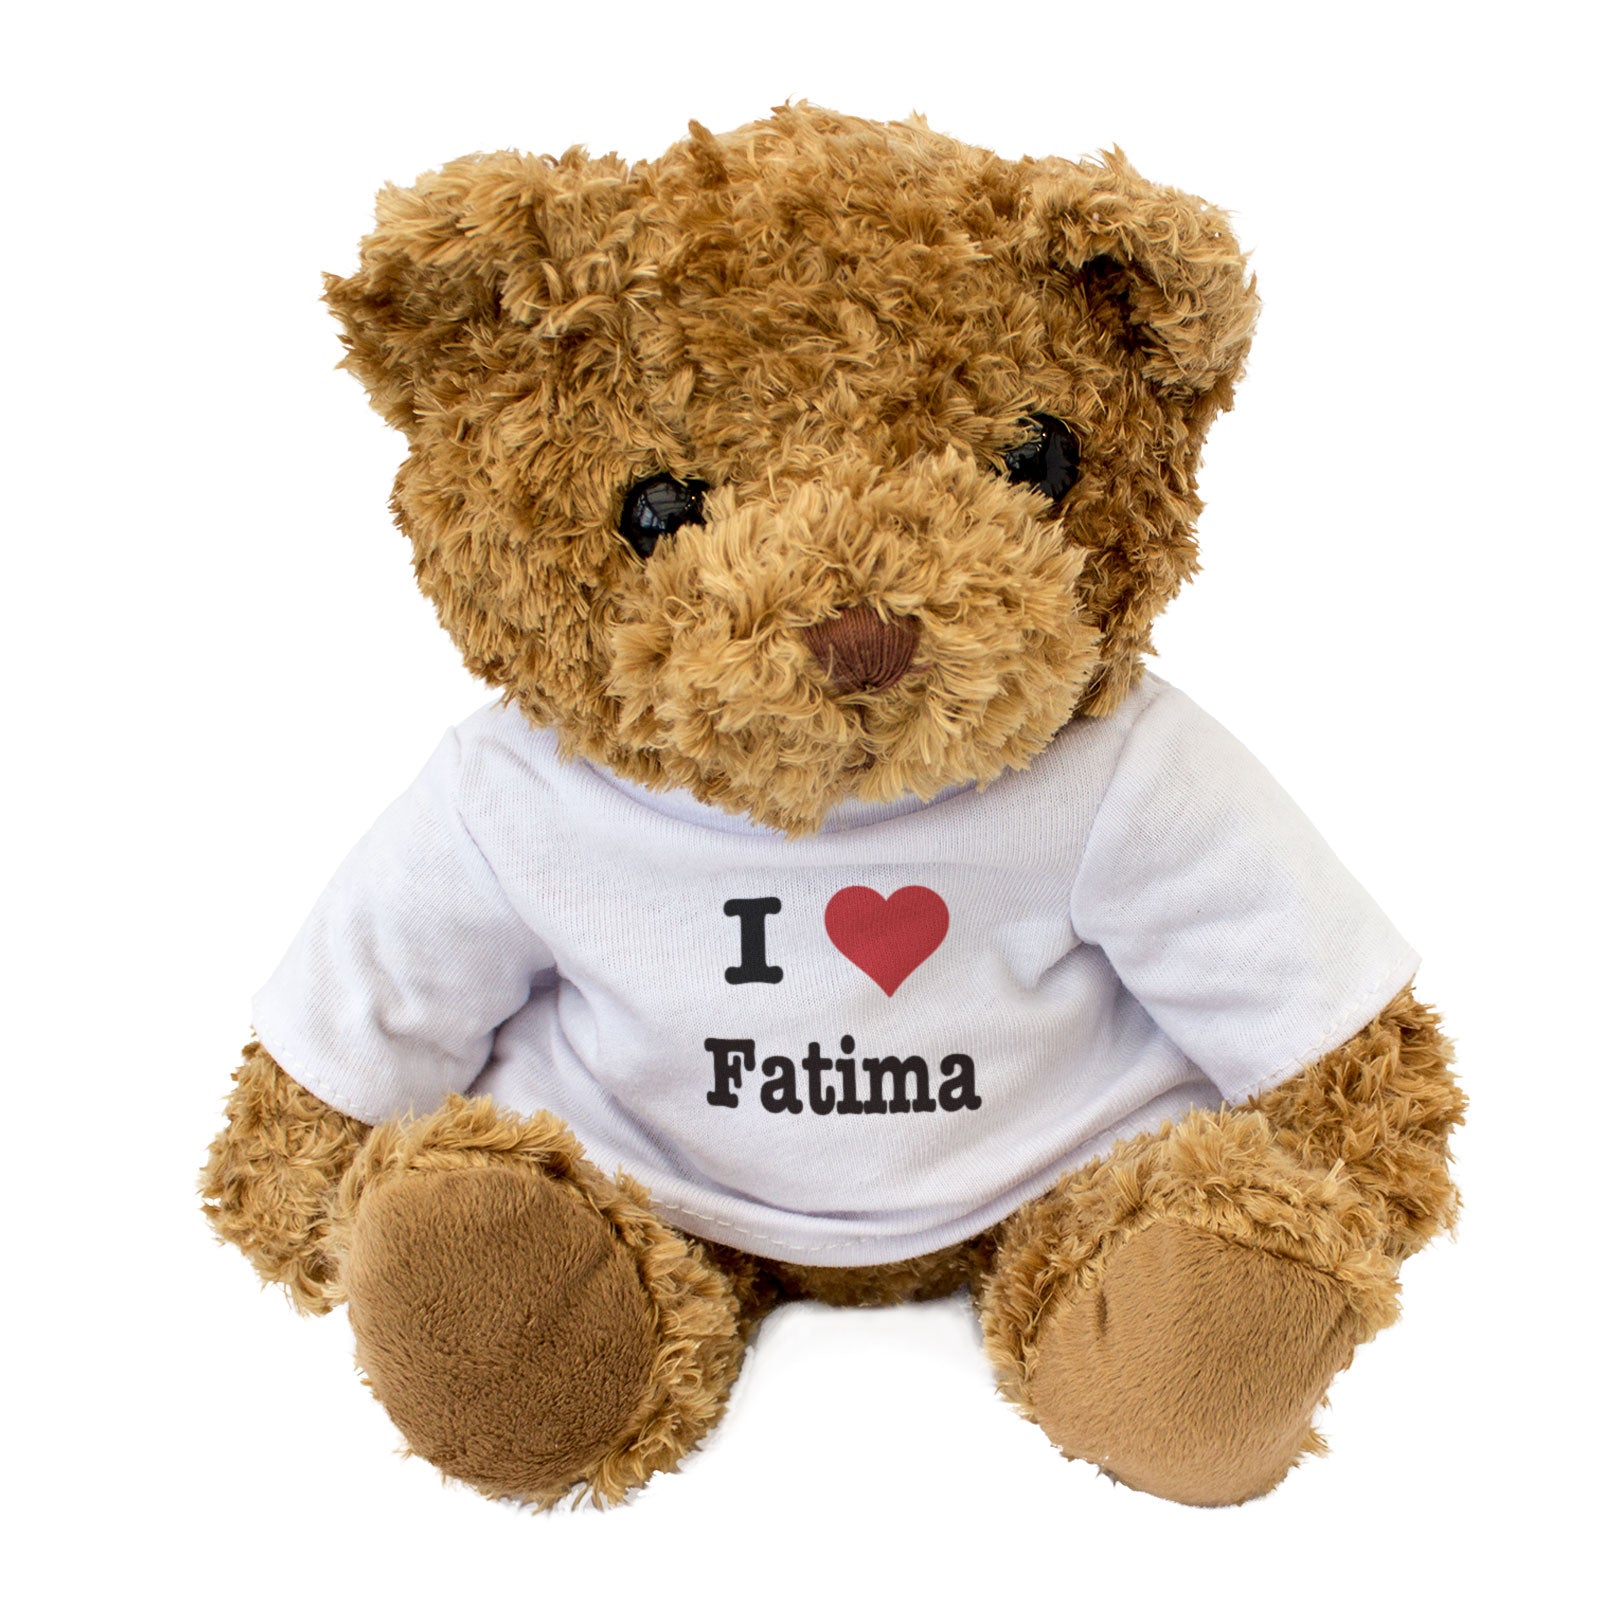 I Love Fatima - Teddy Bear